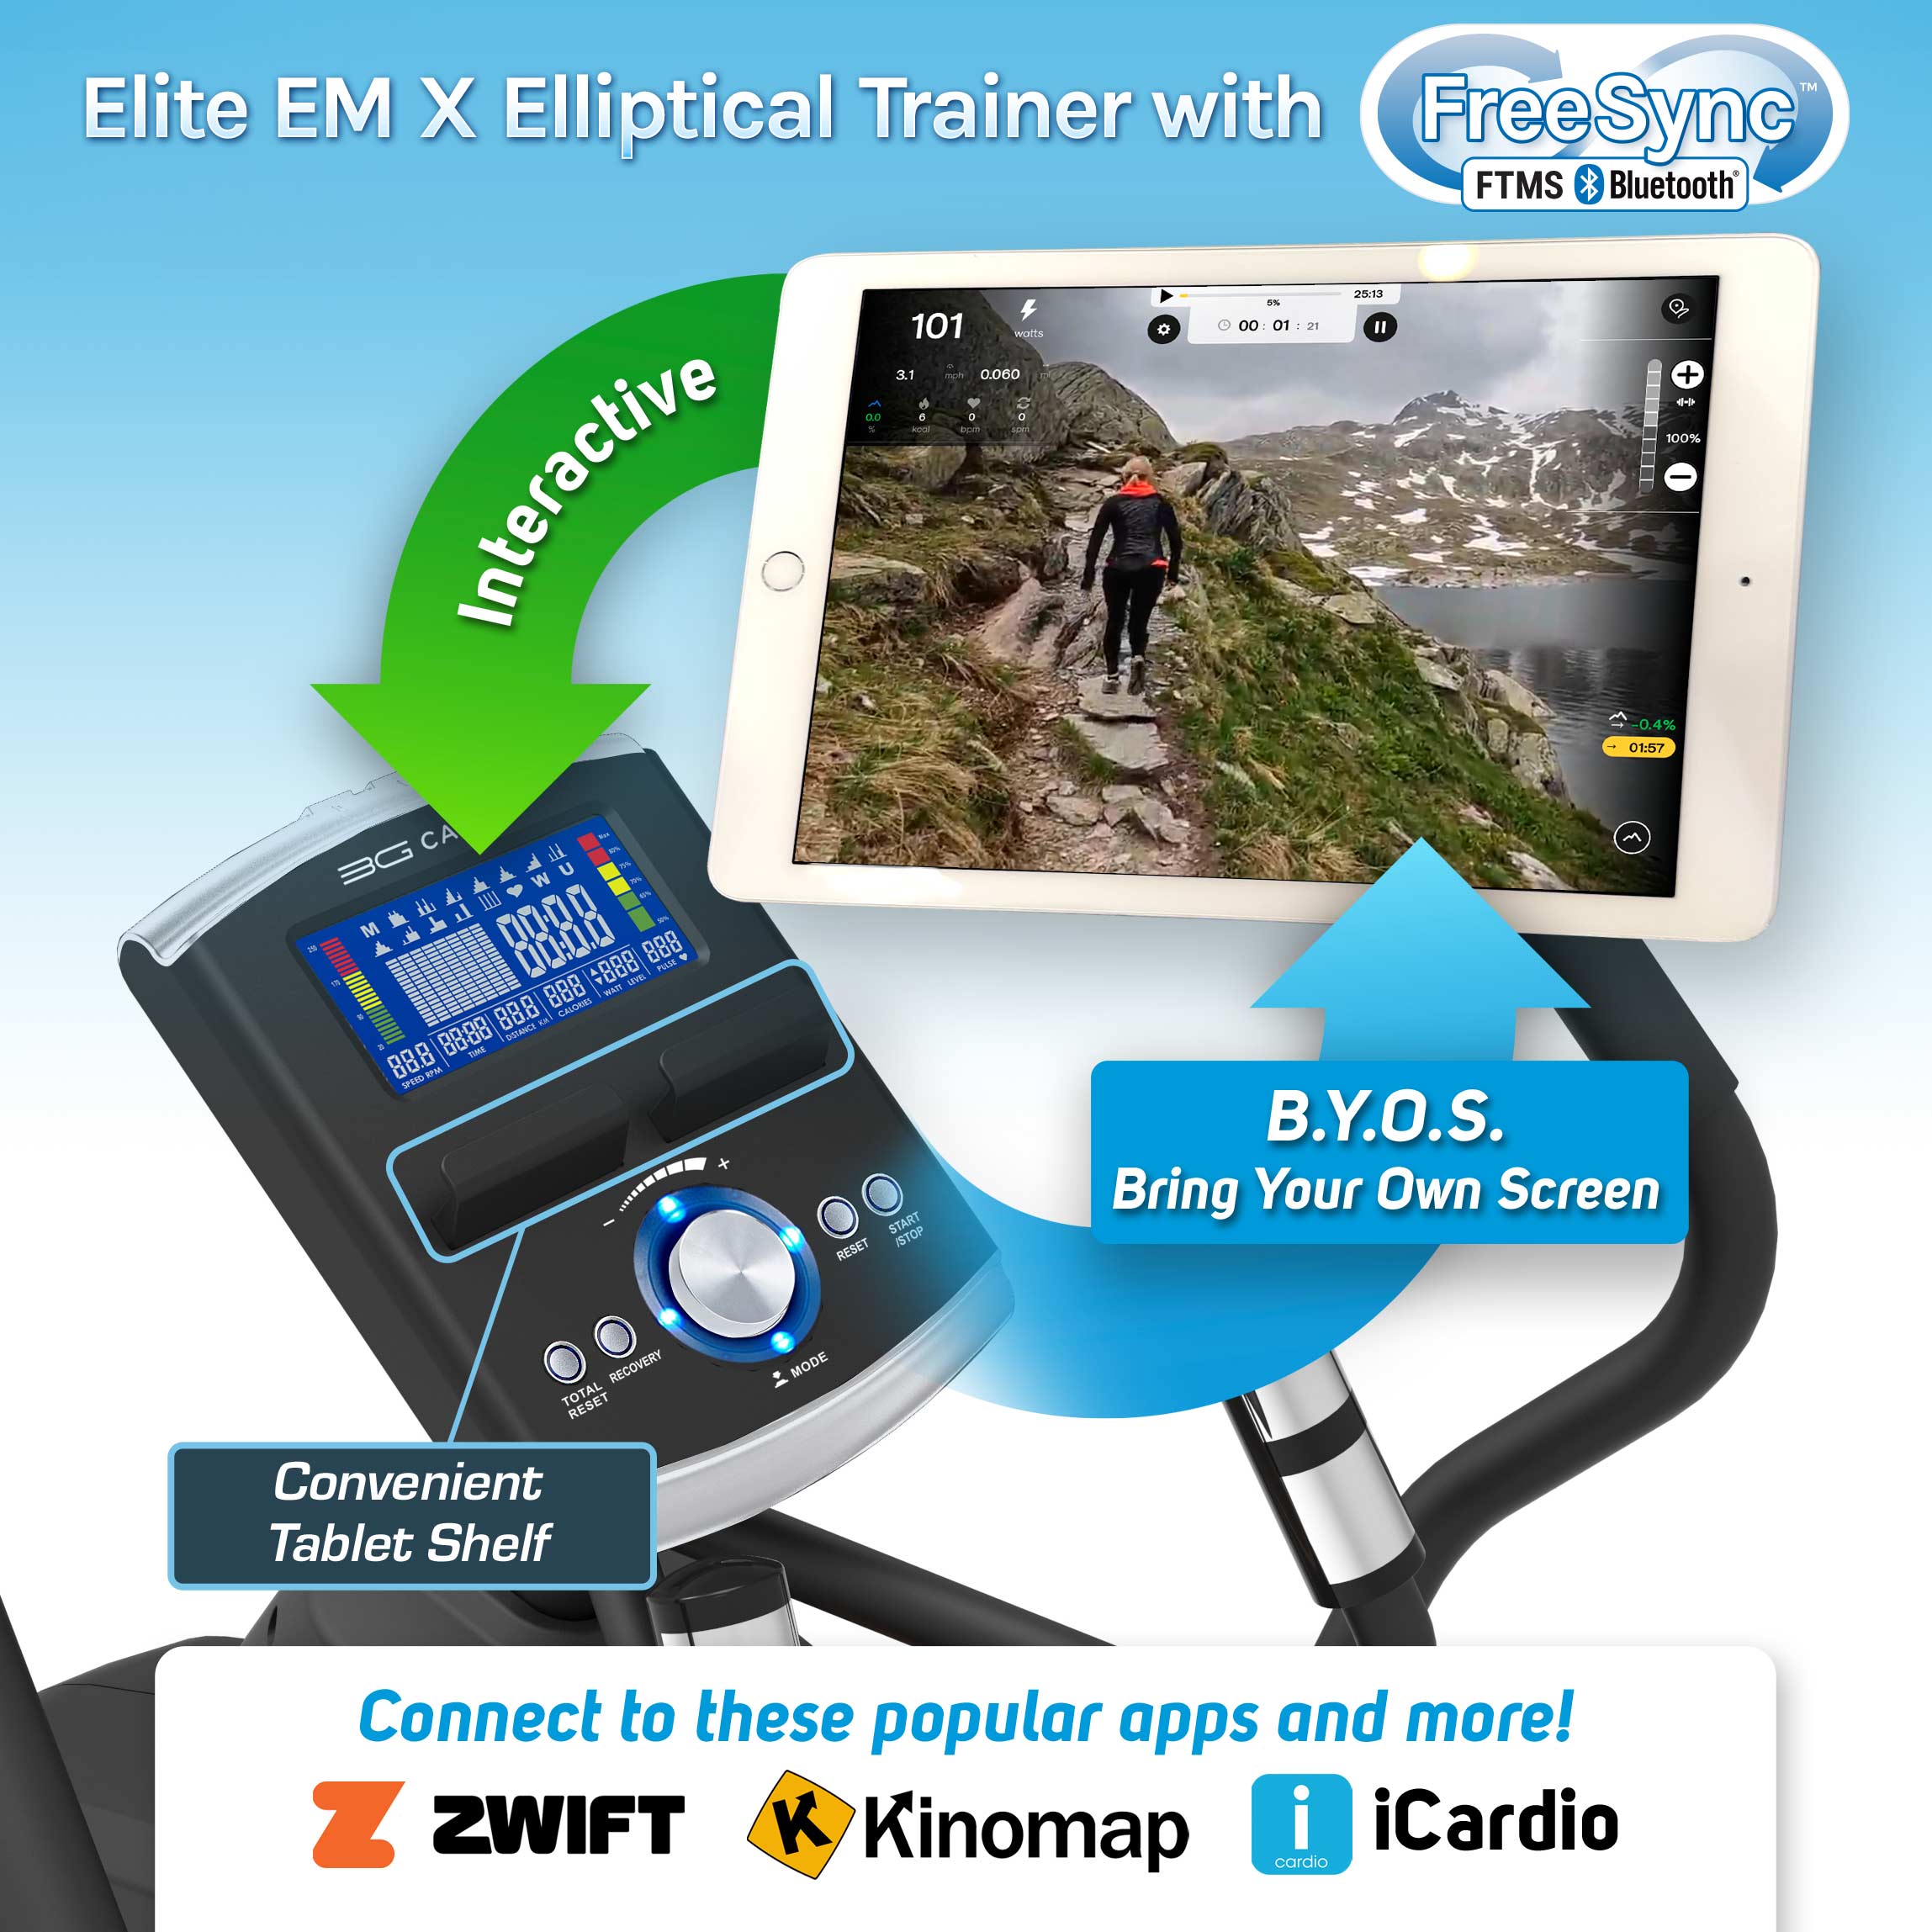 Introducing the 3G Cardio Elite EM X Elliptical Trainer